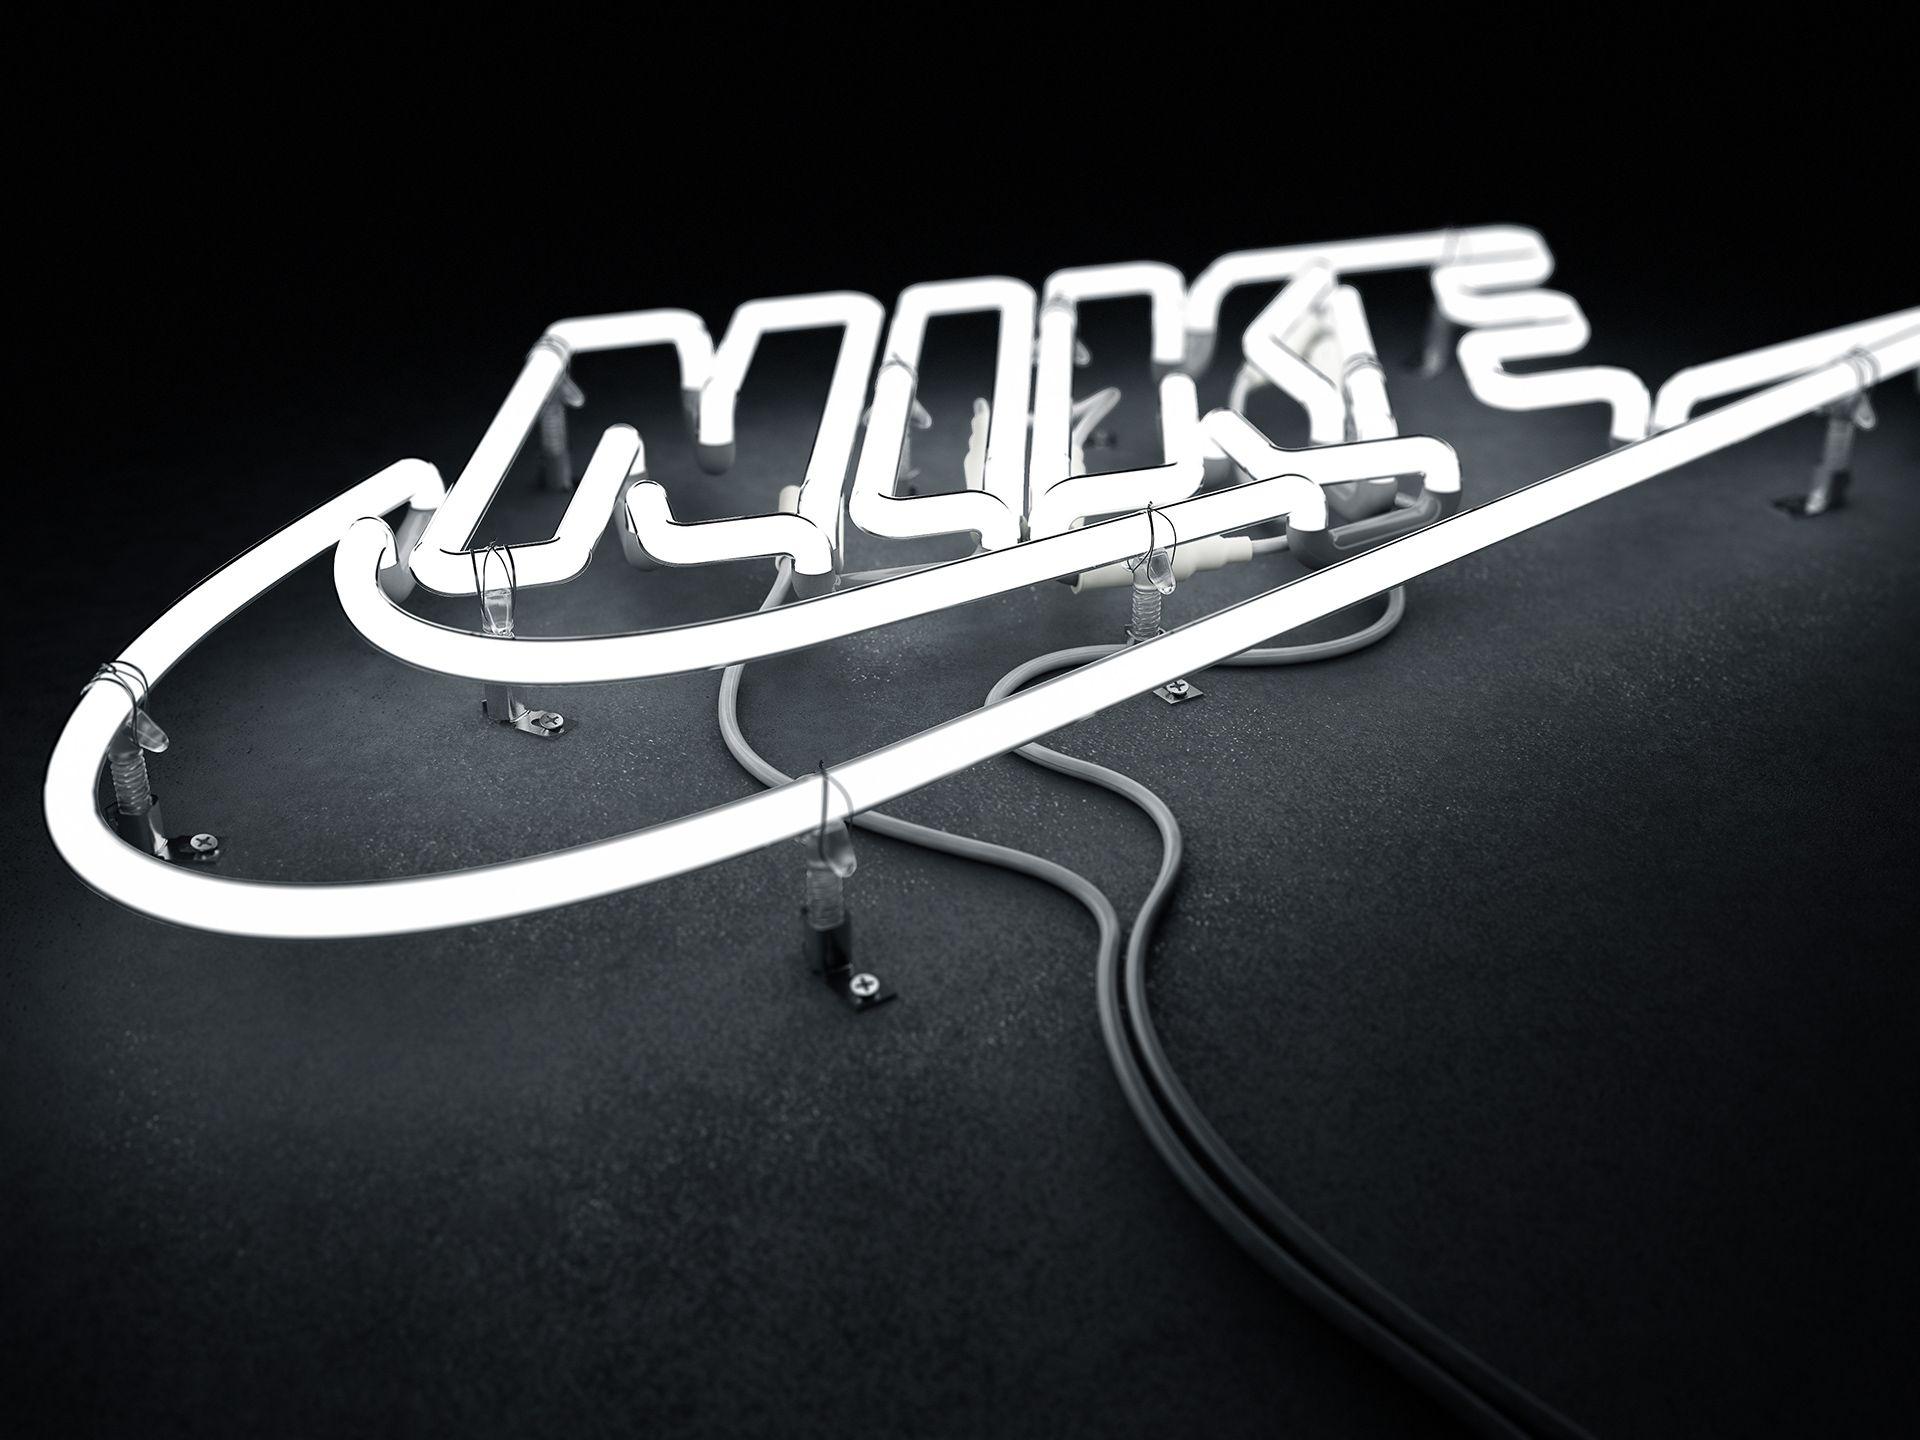 Nike Logo Wallpaper In Neon